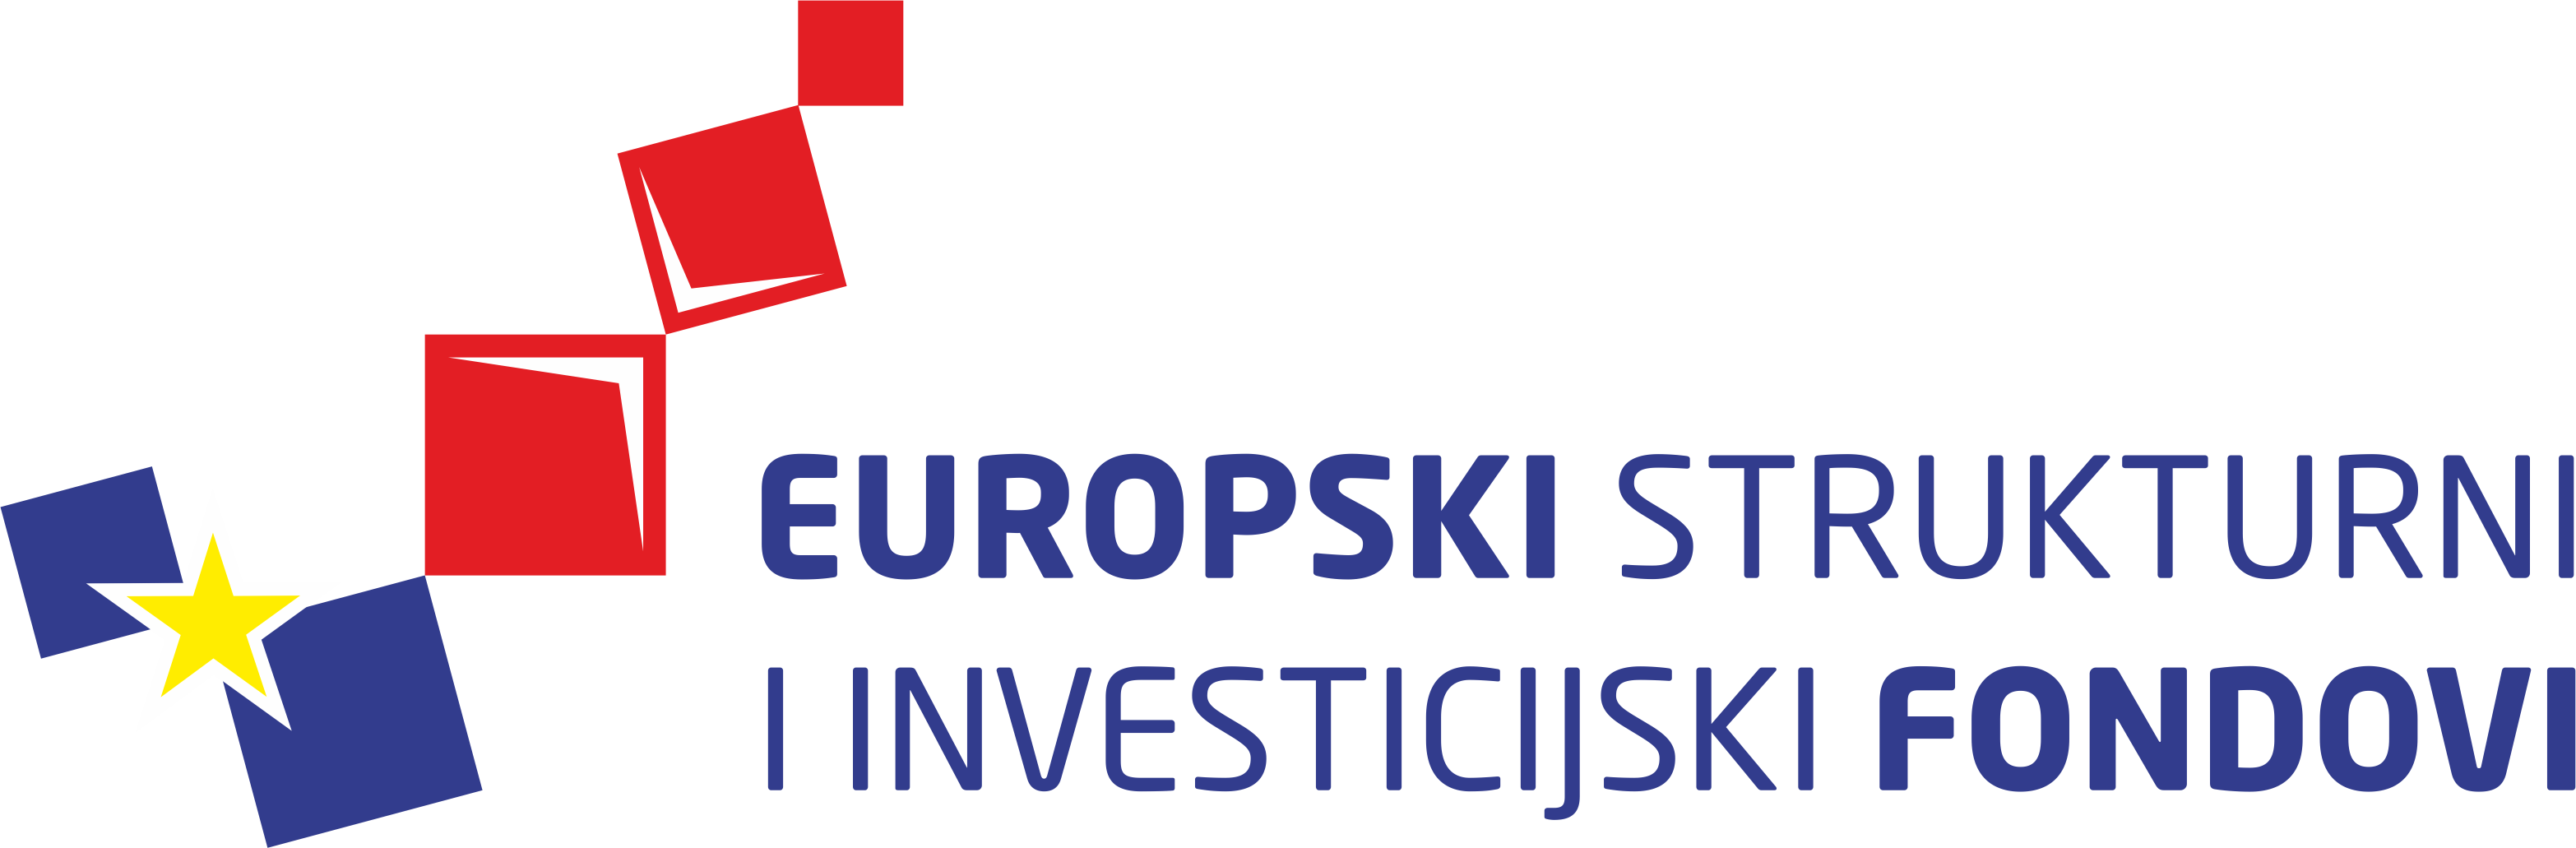 eu-logo-image 1